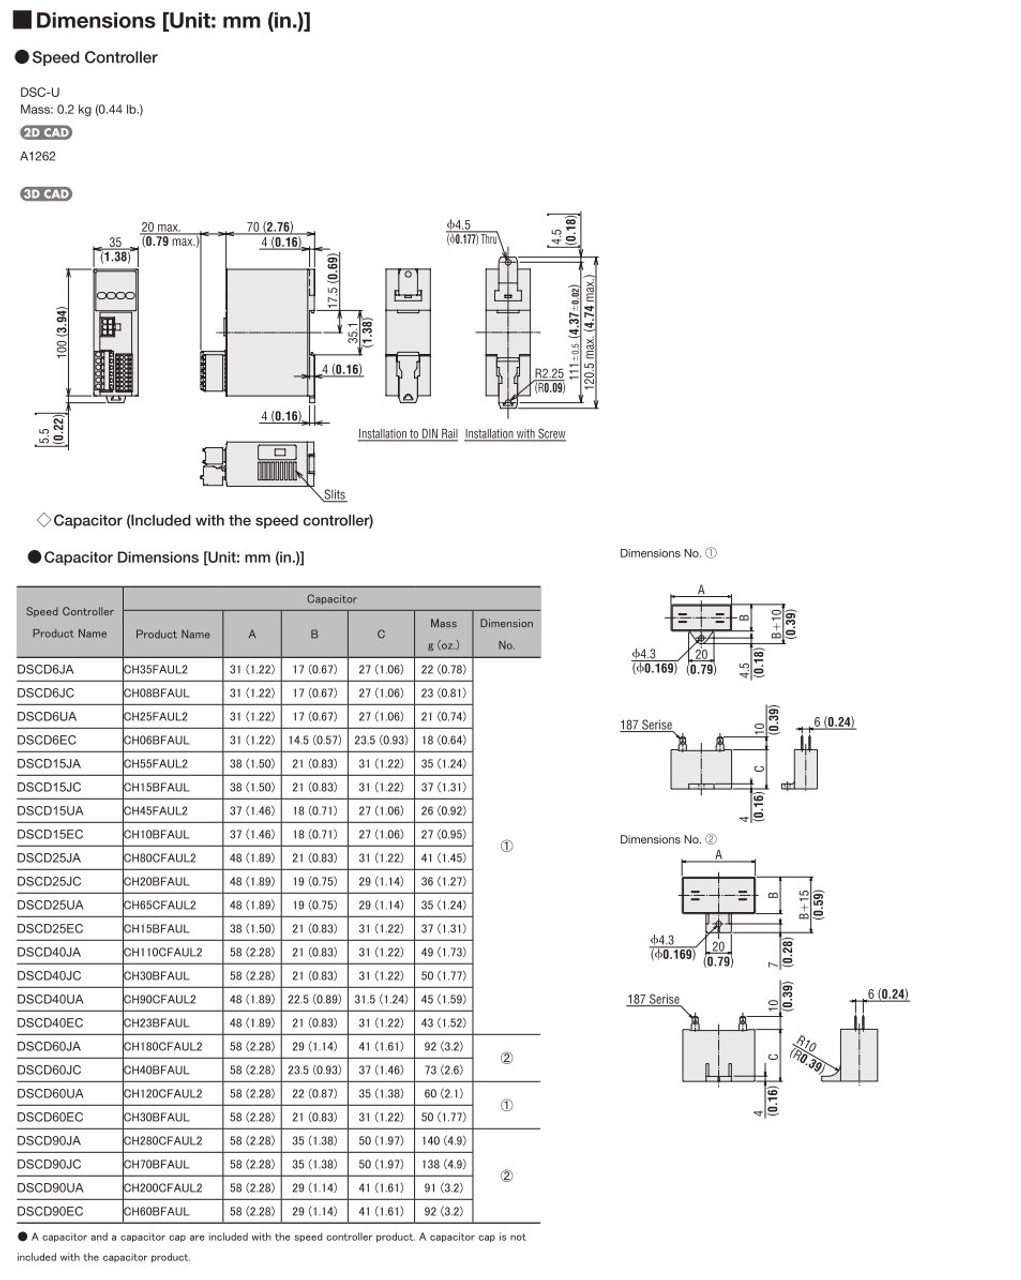 SCM315EC-25A / DSCD15EC - Dimensions